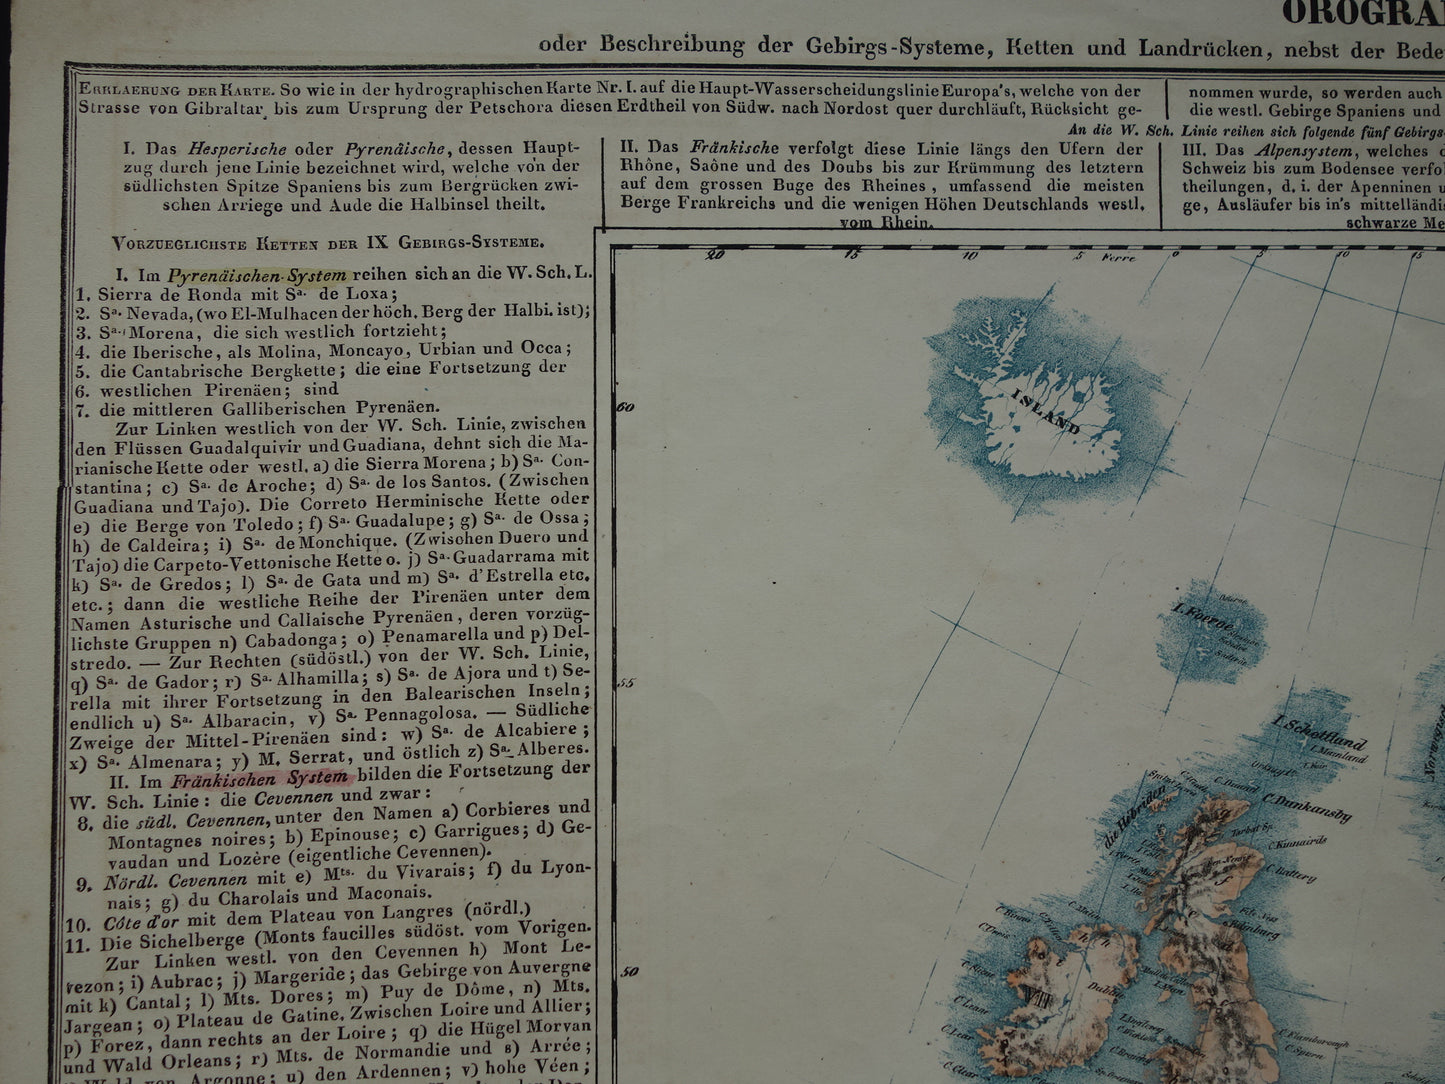 EUROPA grote oude kaart bergen van Europa uit 1840 originele antieke landkaart gebergten Europees continent hoogste bergtoppen Alpen Karpaten vintage print